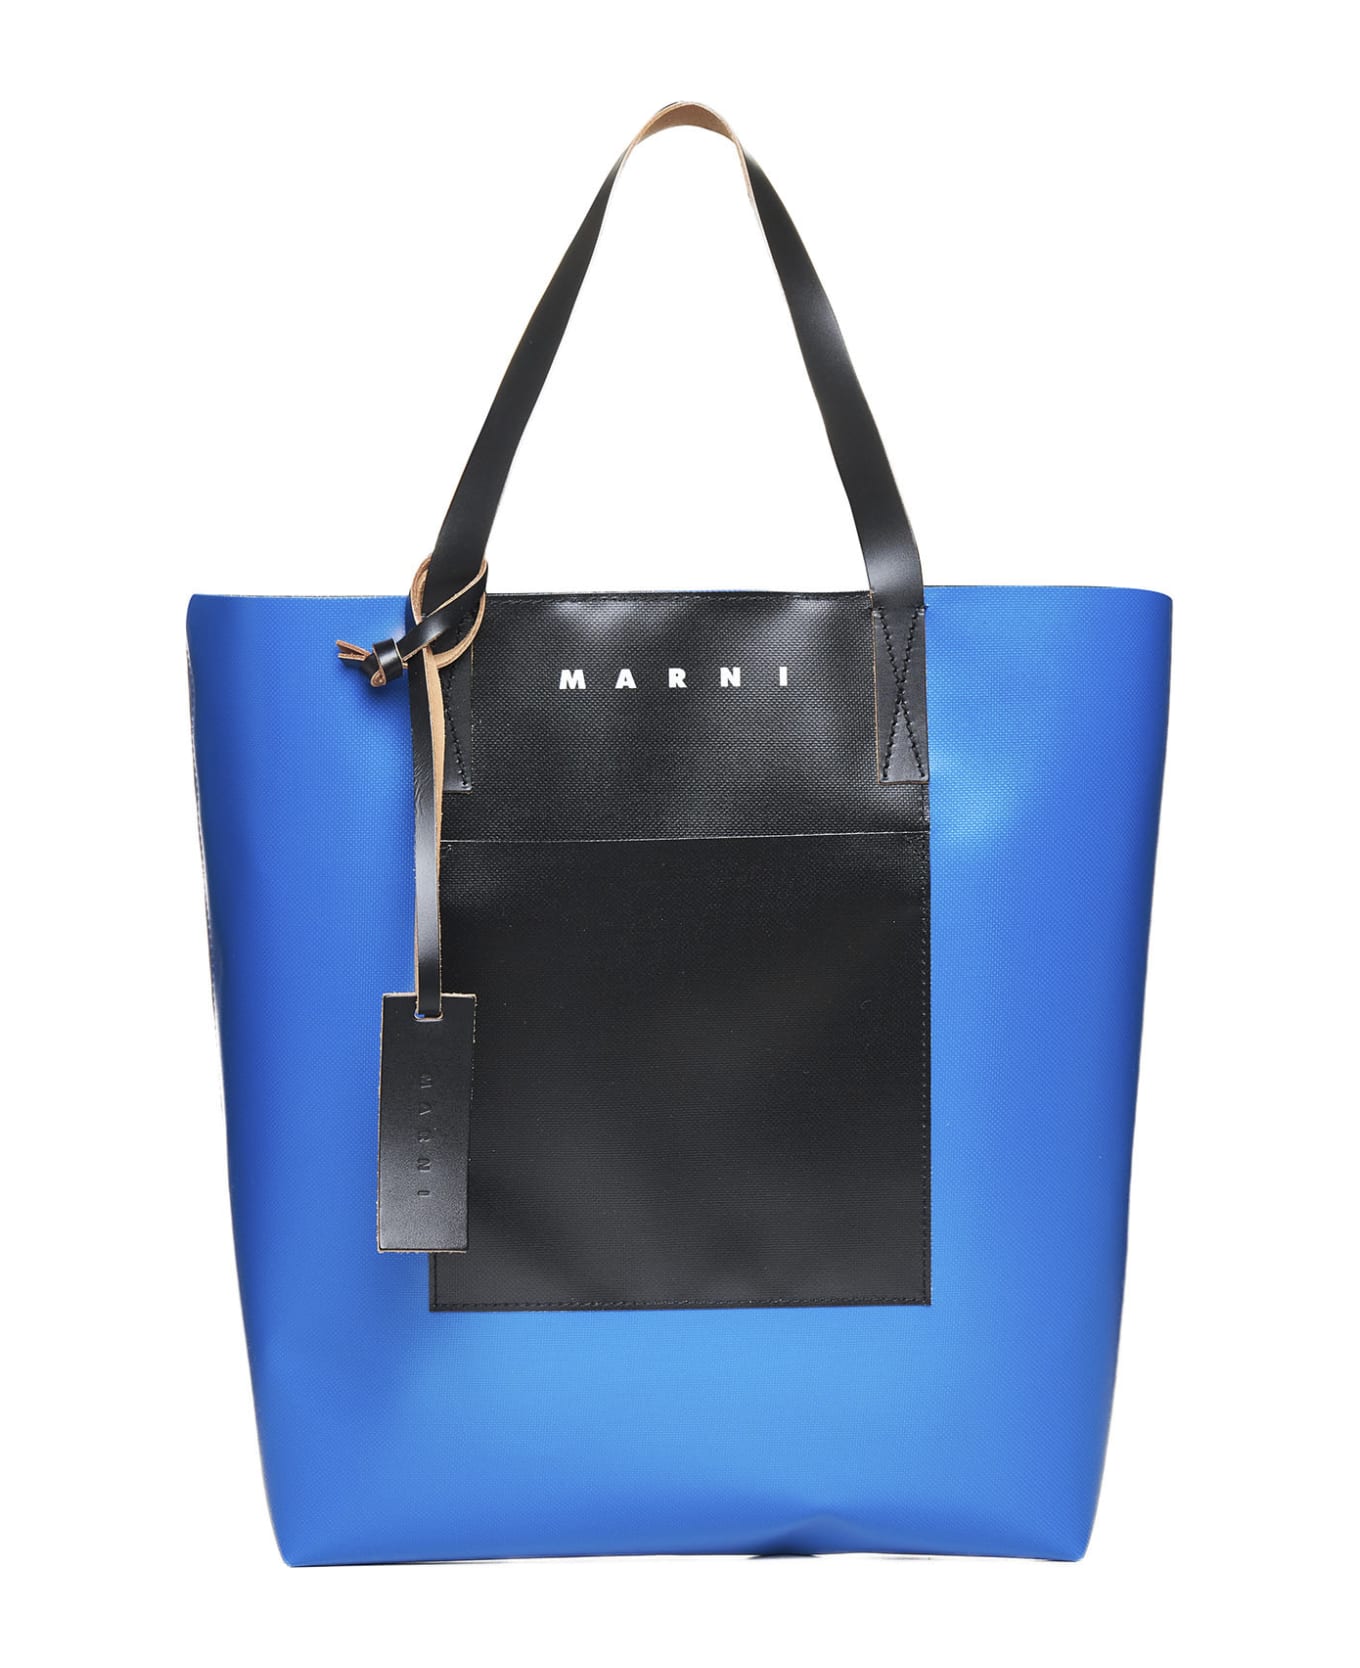 Marni Tribeca Shopping Bag - Royal black black トートバッグ